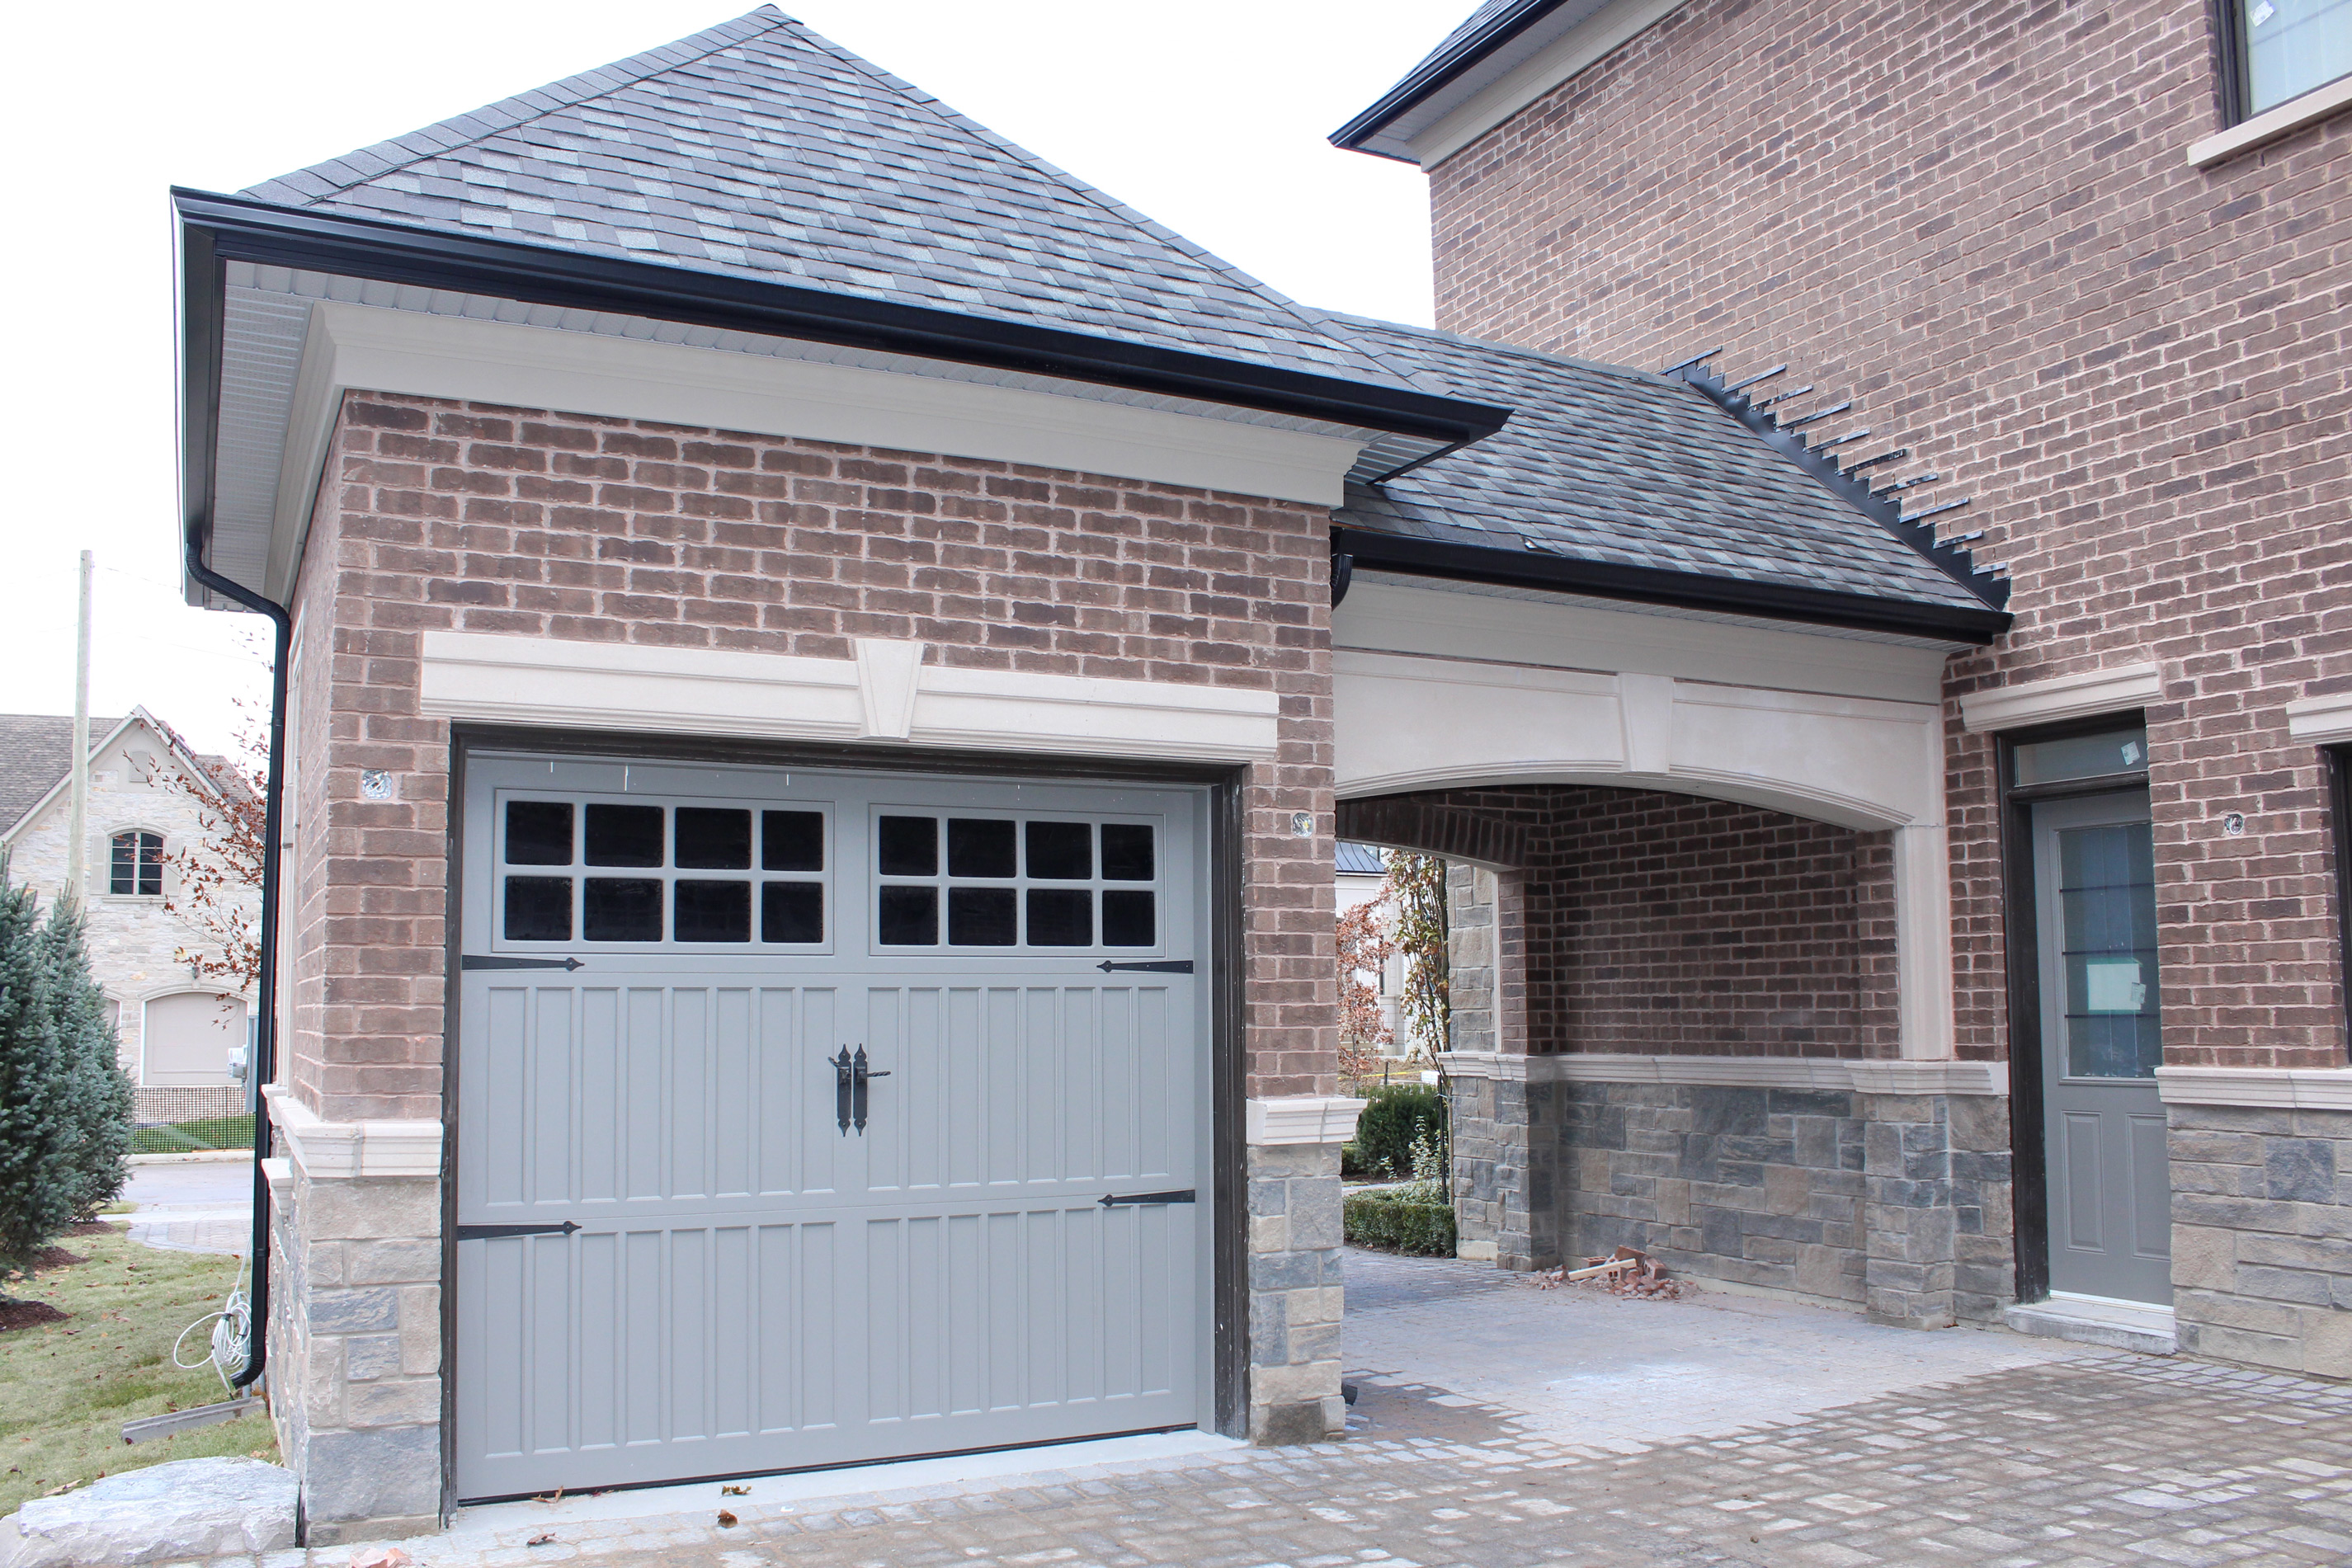 Princess Margaret Home garage shot and side door - Brick color is Westford, Stone color is Edgerock Delta Blend